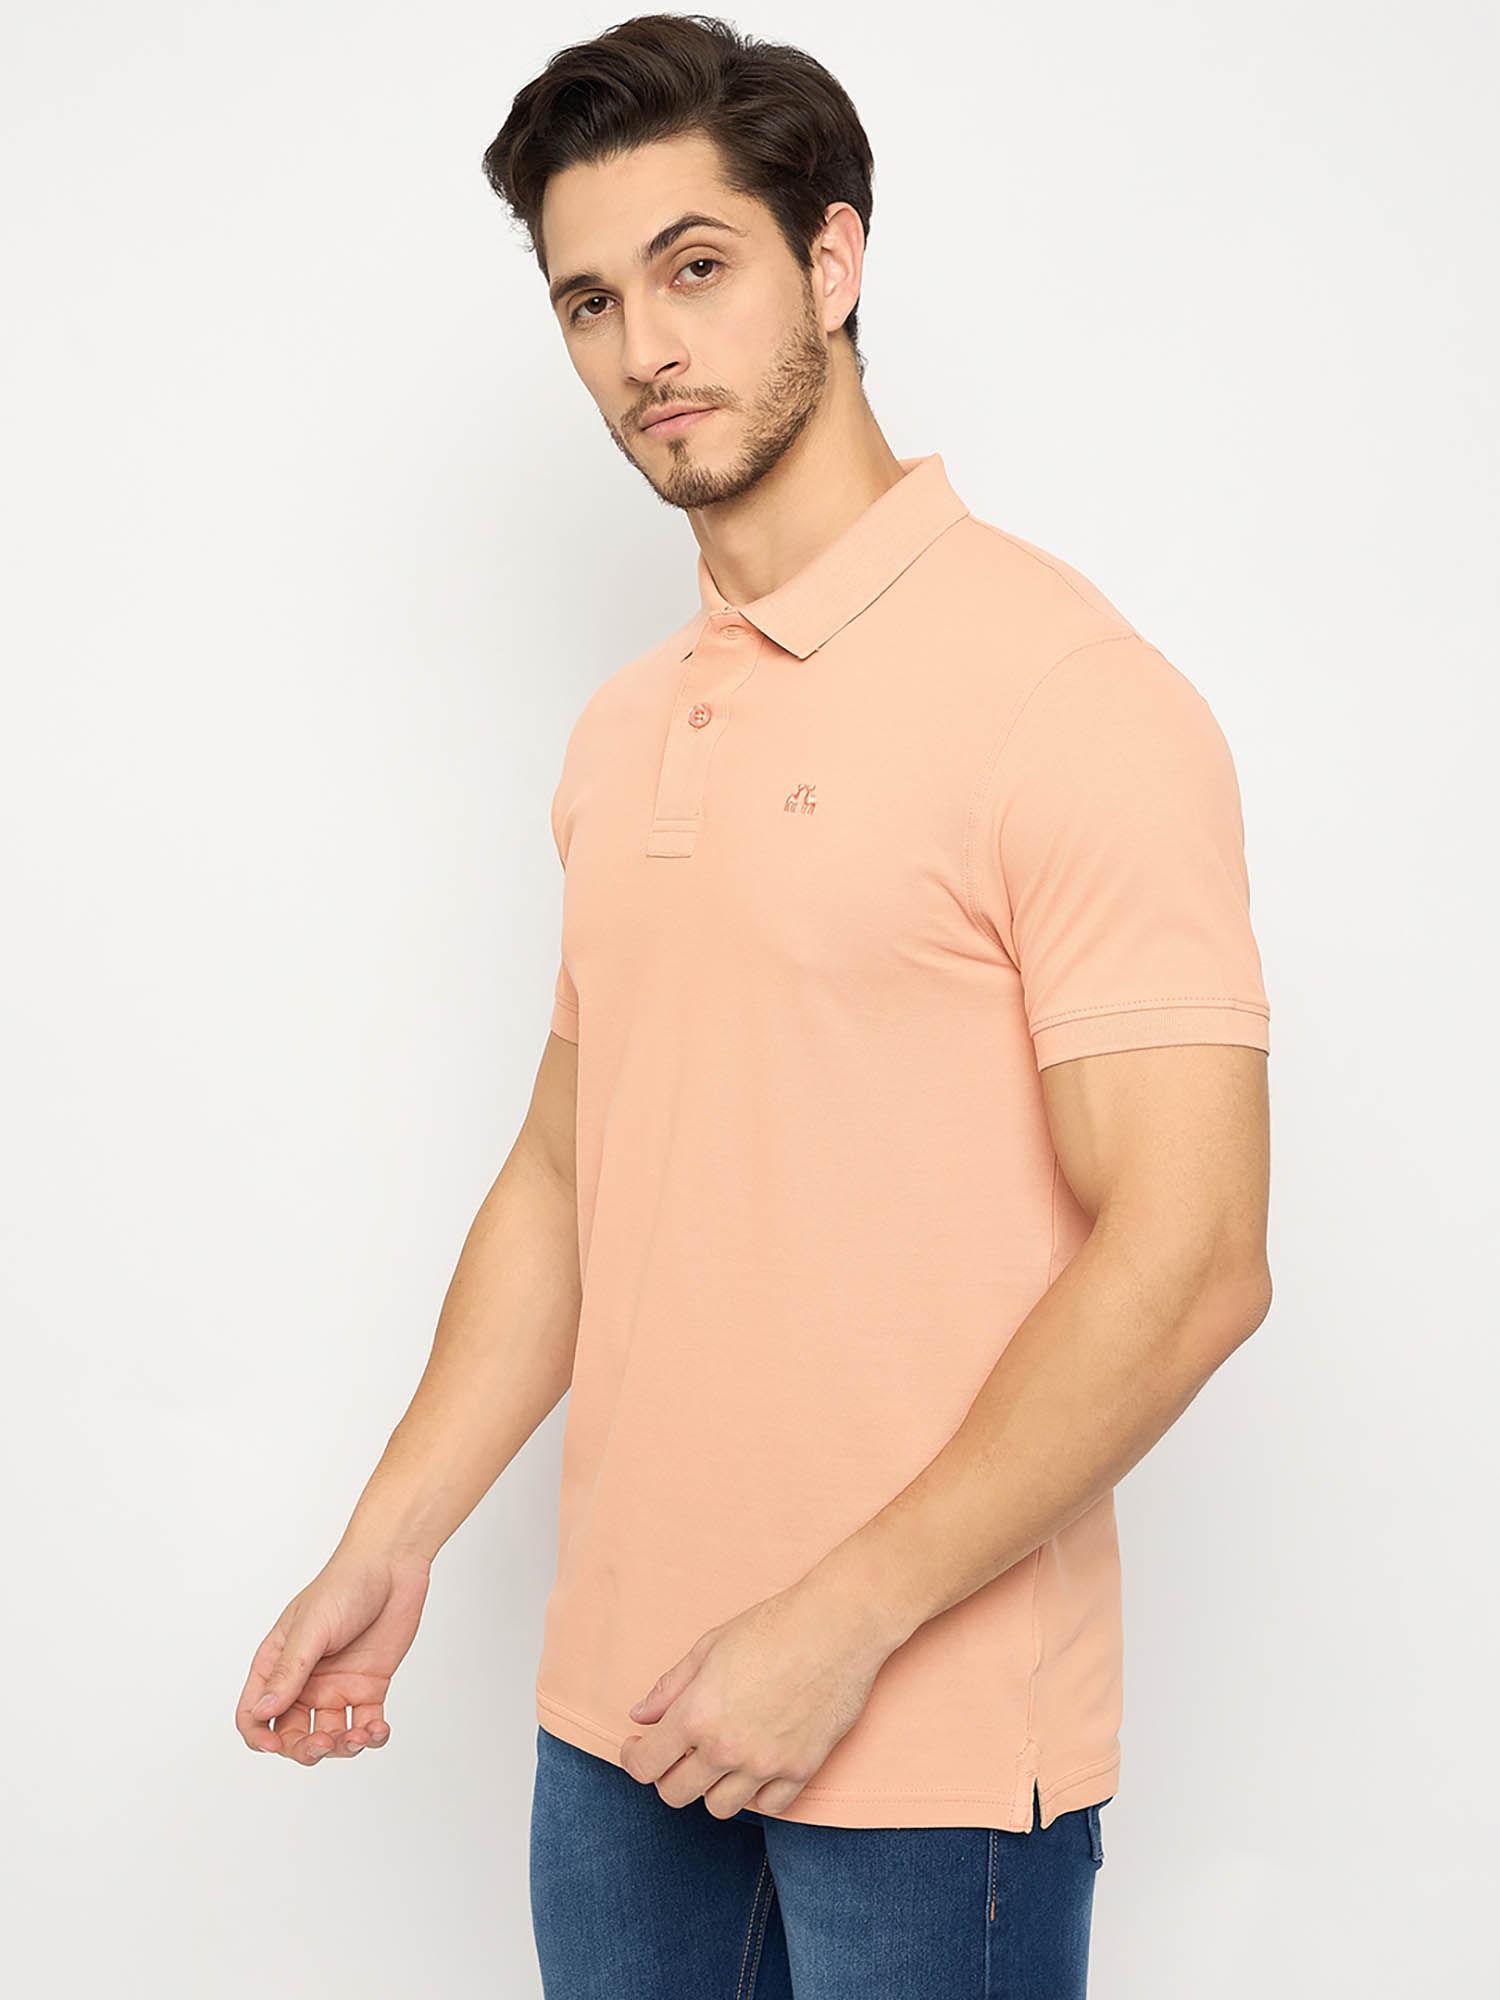 mens half sleeves pink polo t-shirt